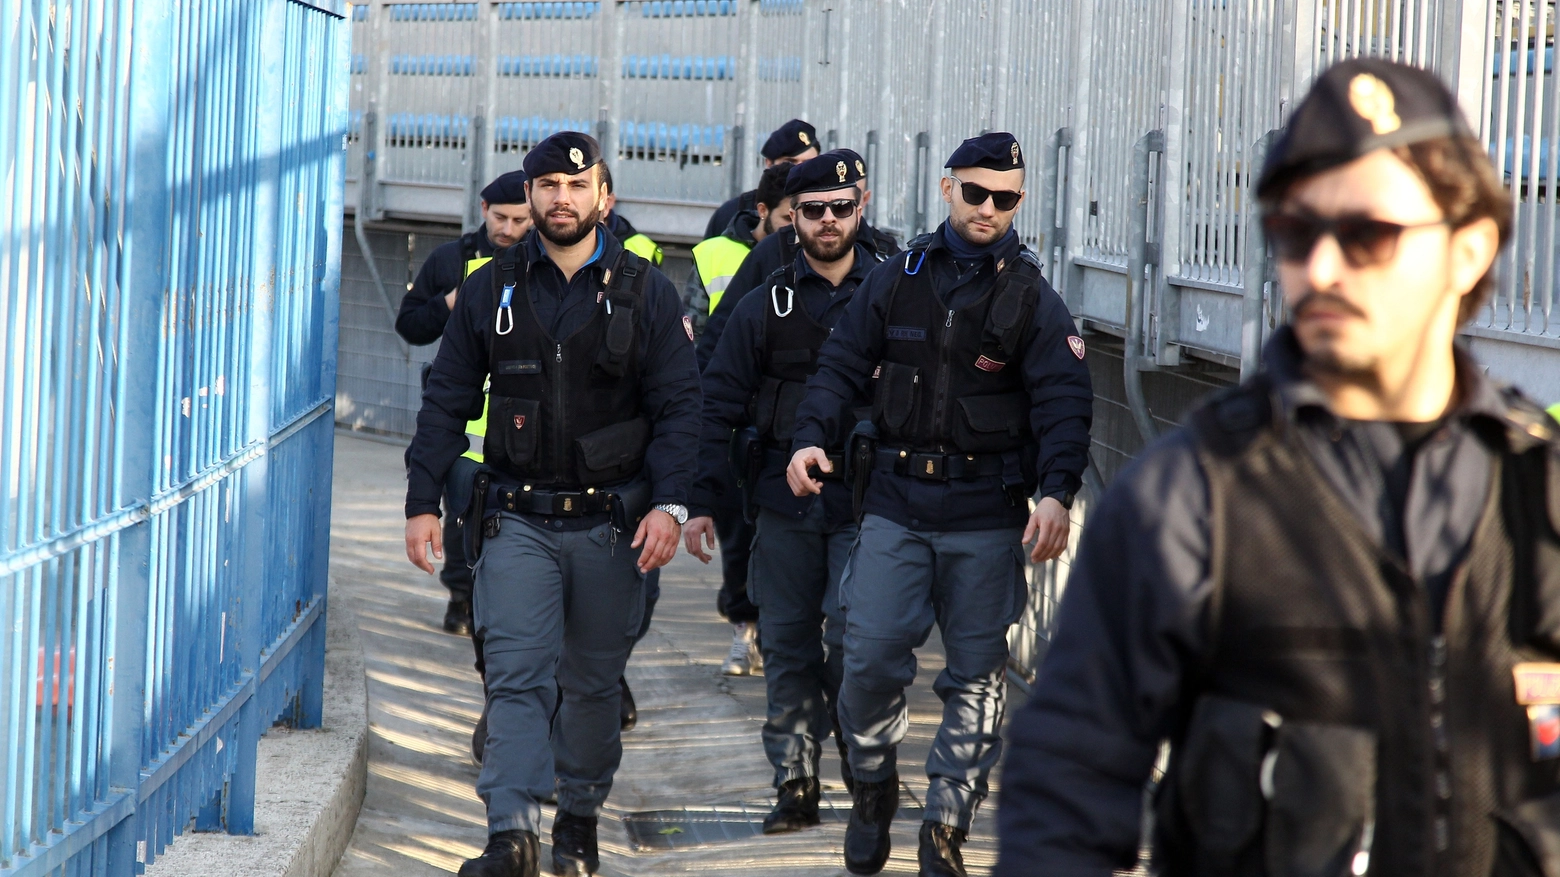 Polizia allo stadio. Foto Gianni Nucci/Germogli